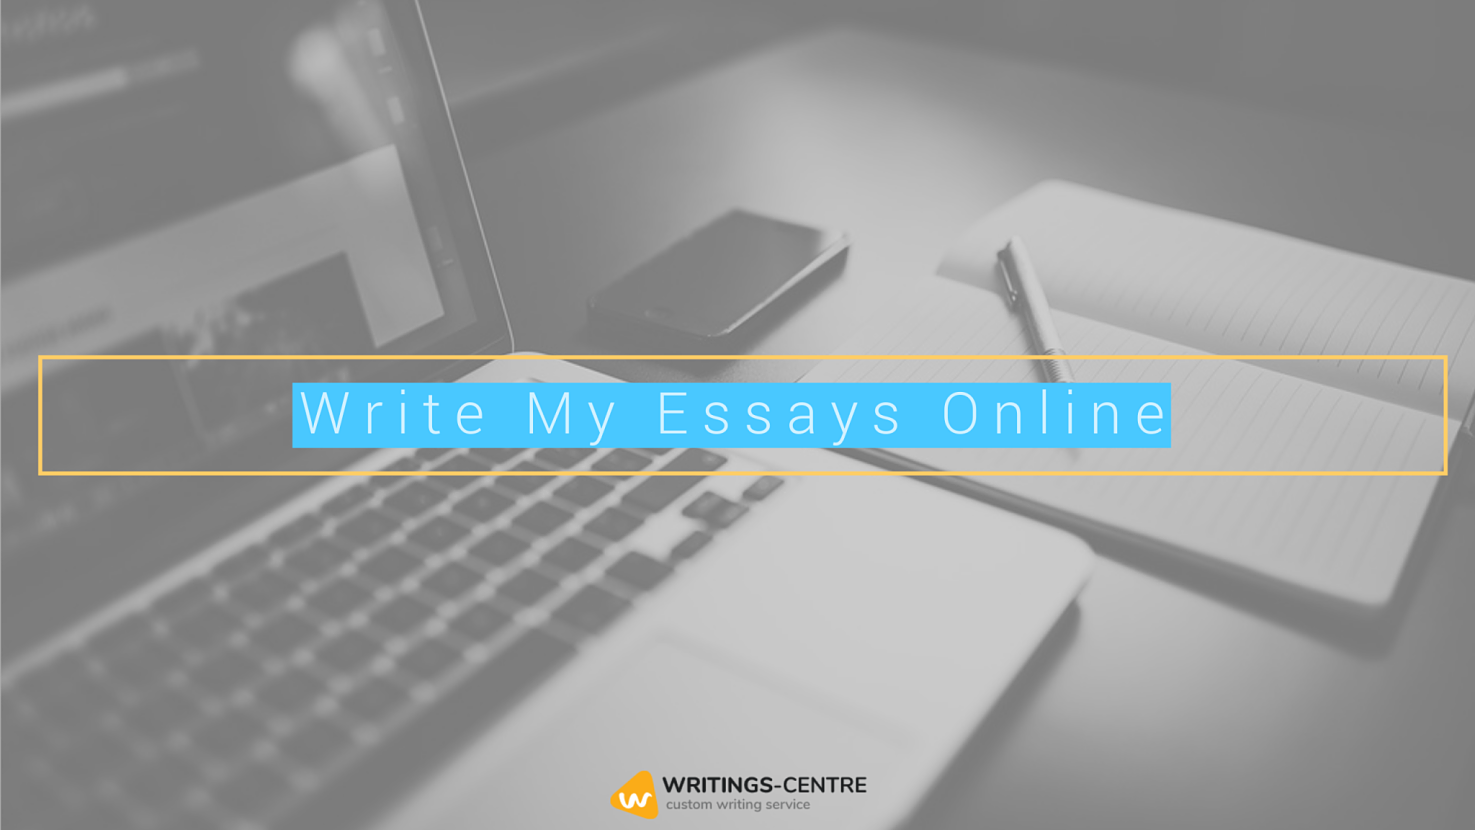 Write My Essays Online